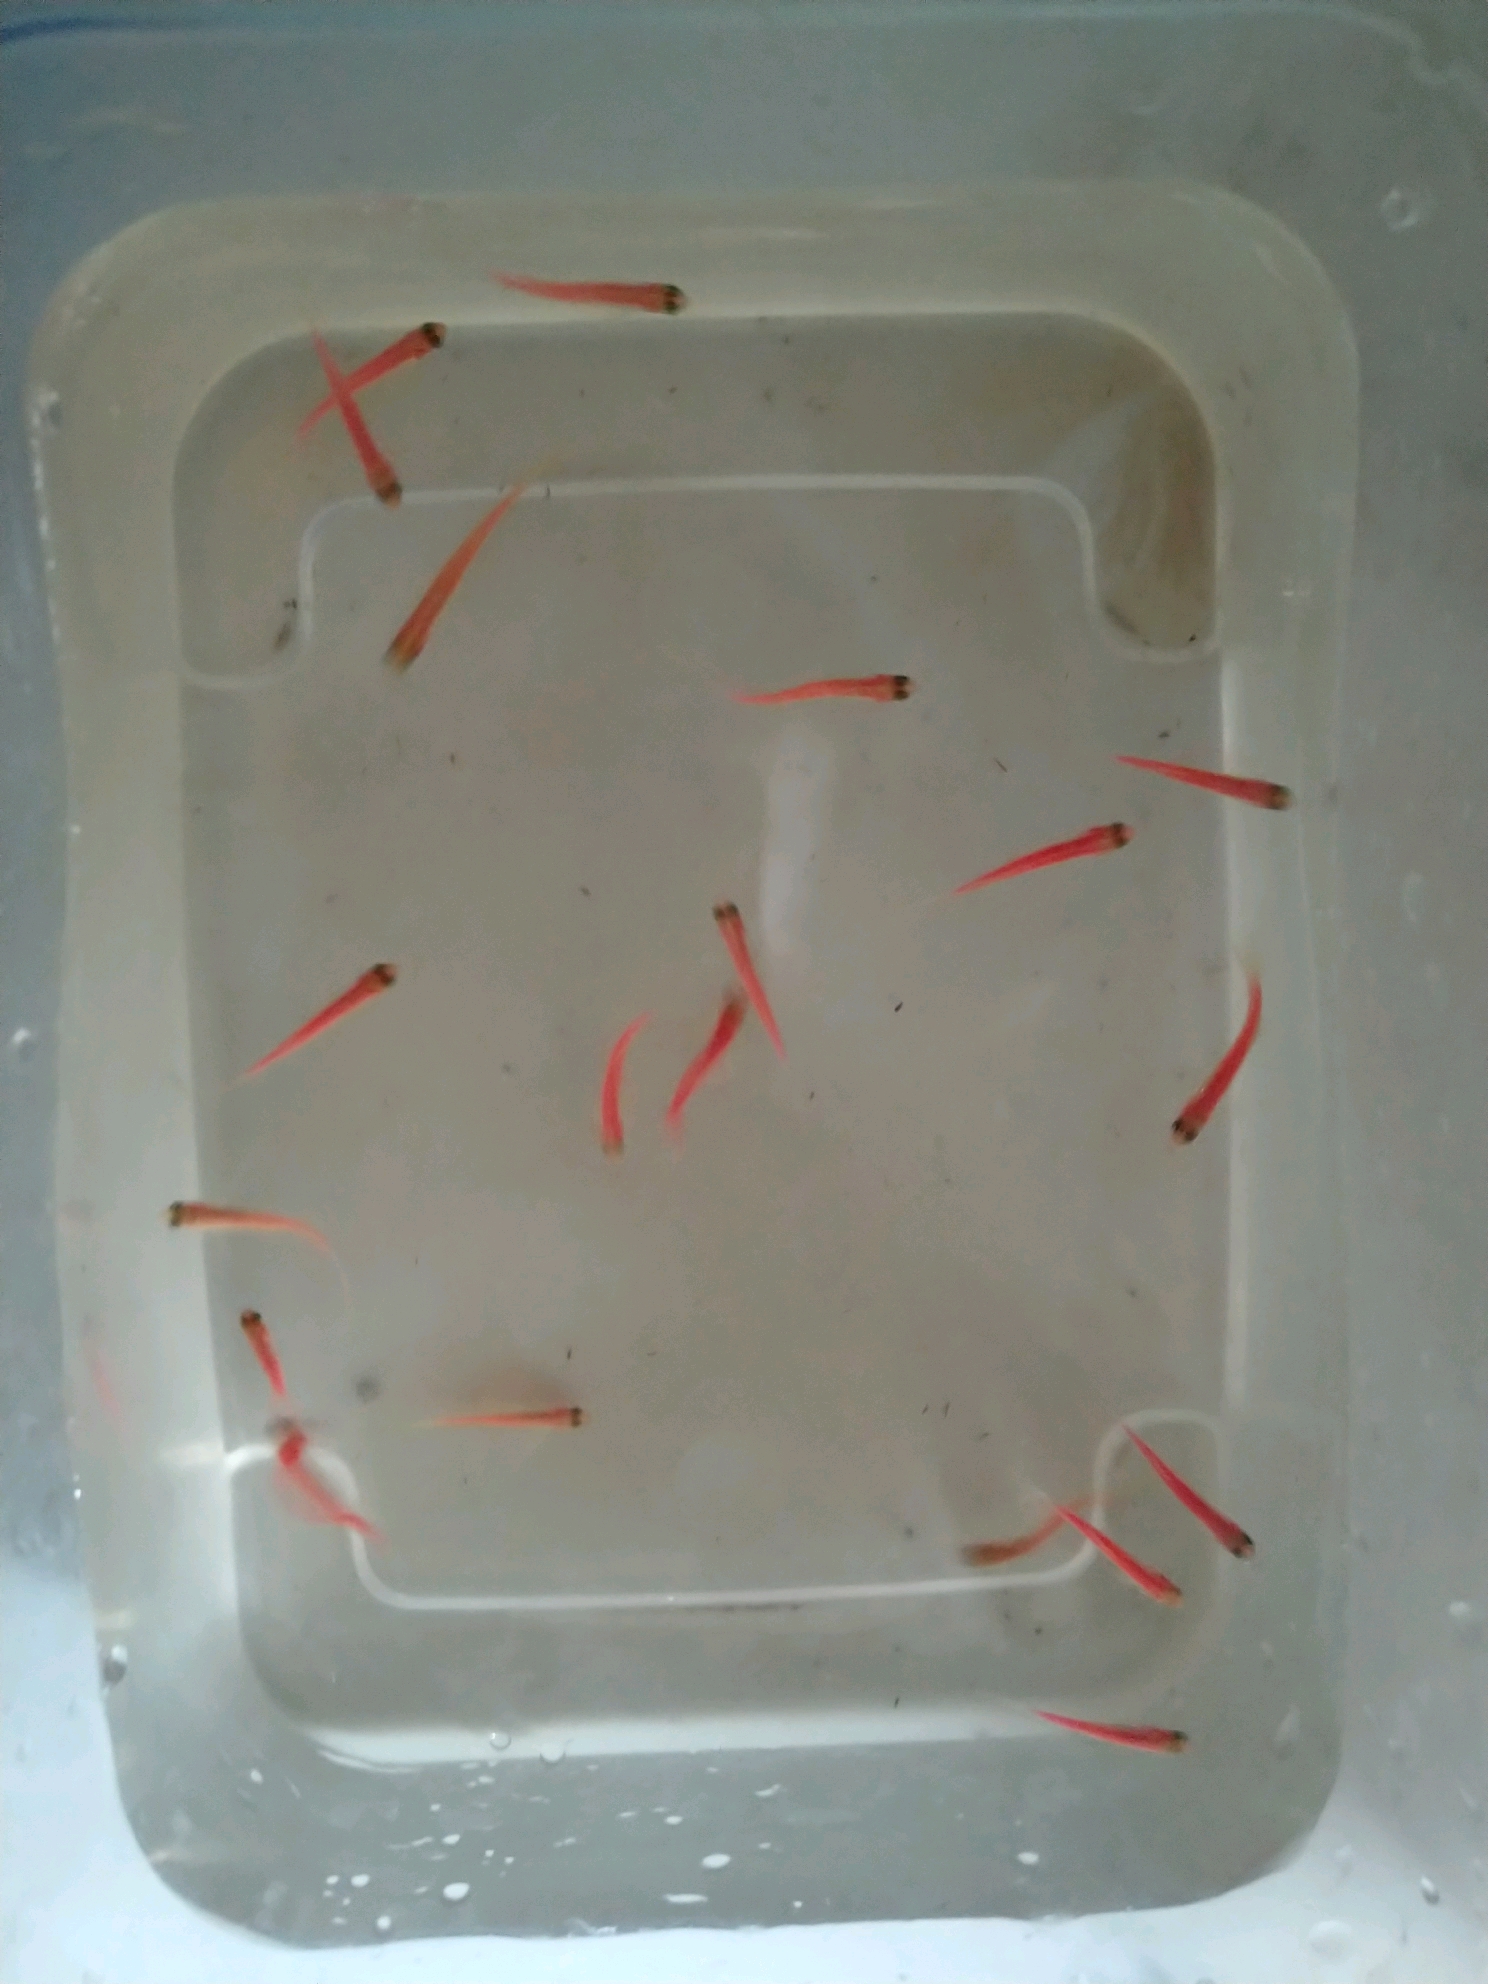 科学网—我拍的鱼卵光学超高分辨率图像 - 王晓明的博文